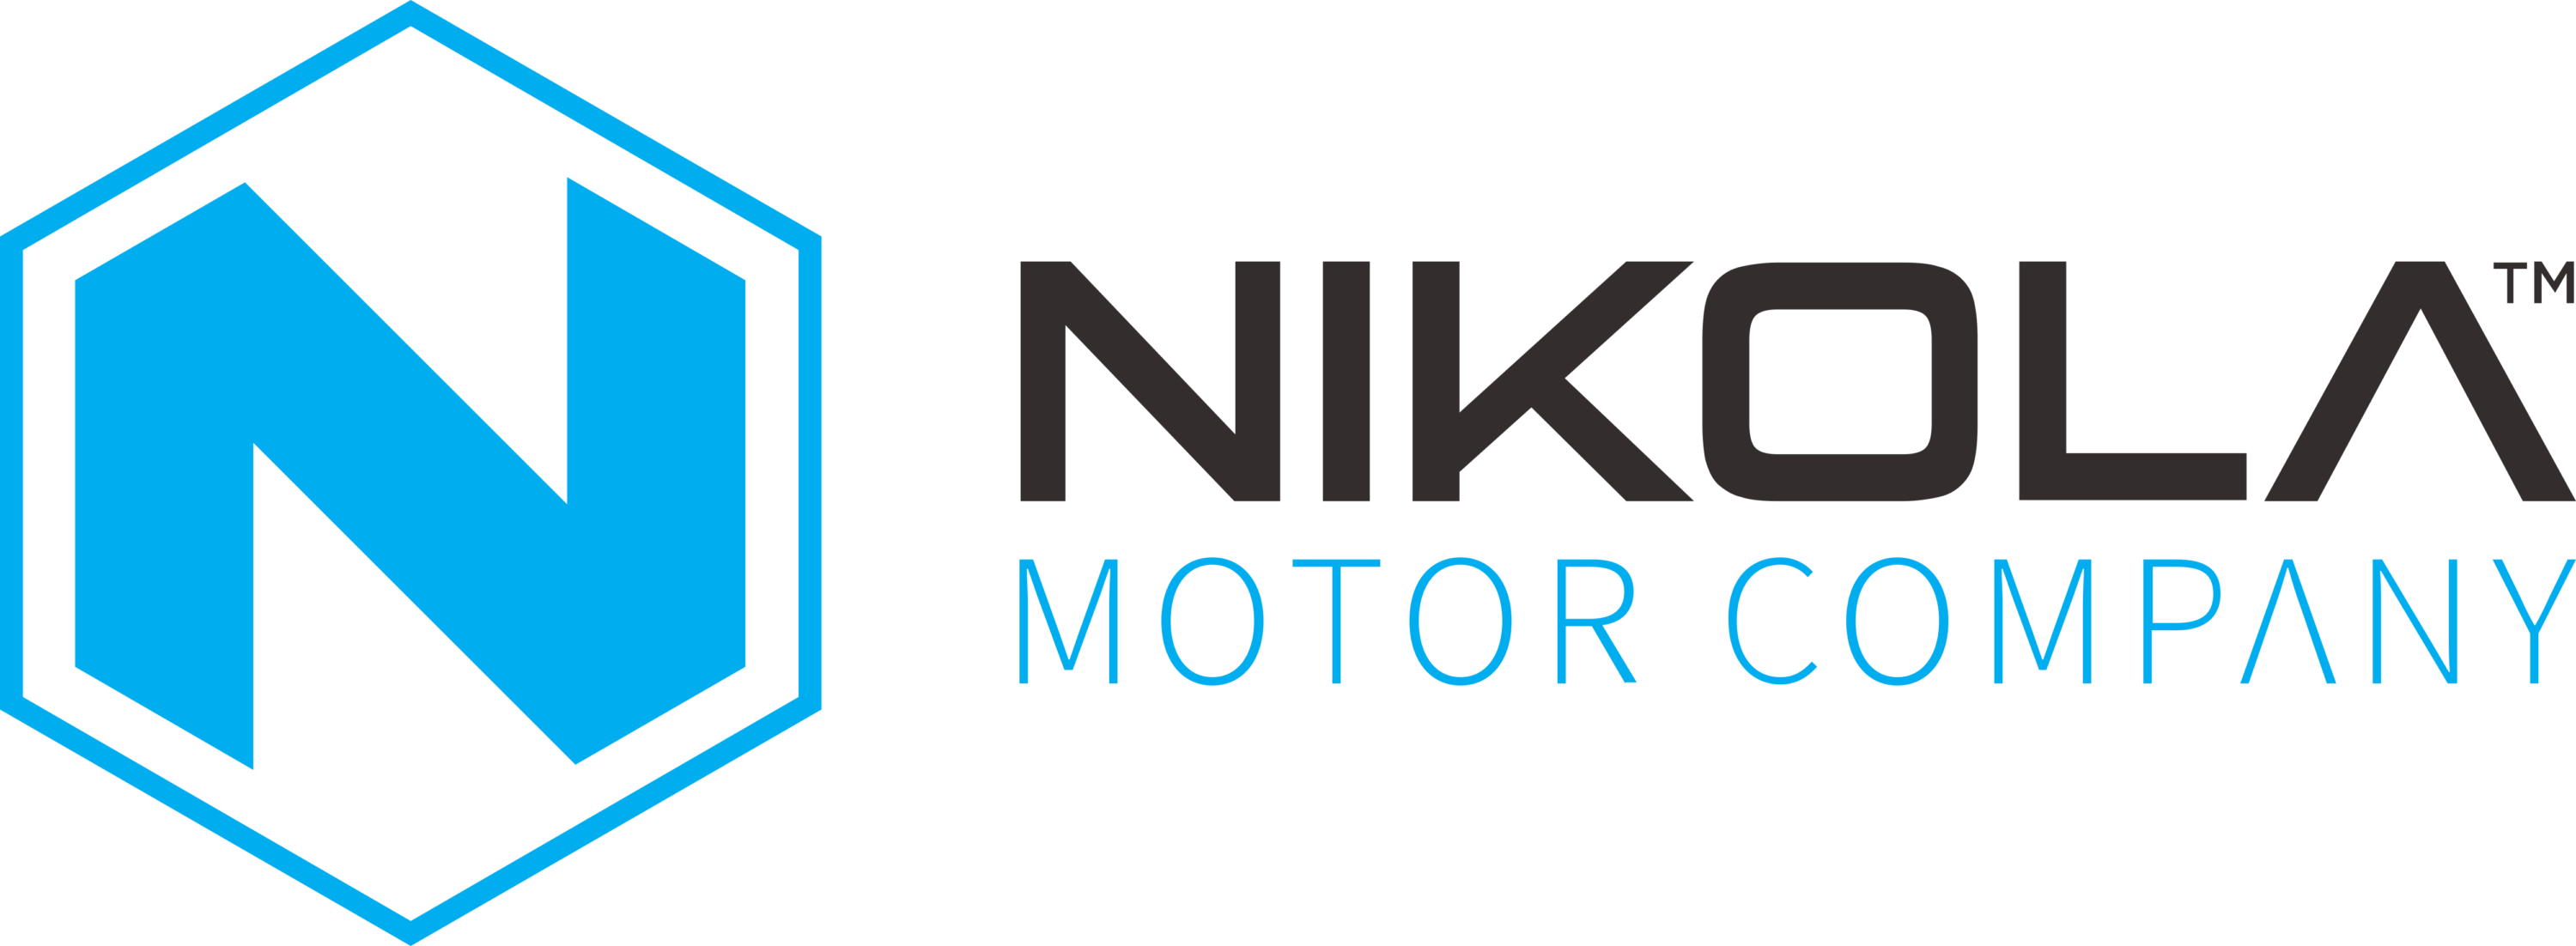 Nikola Motor Company Logo full horizontally